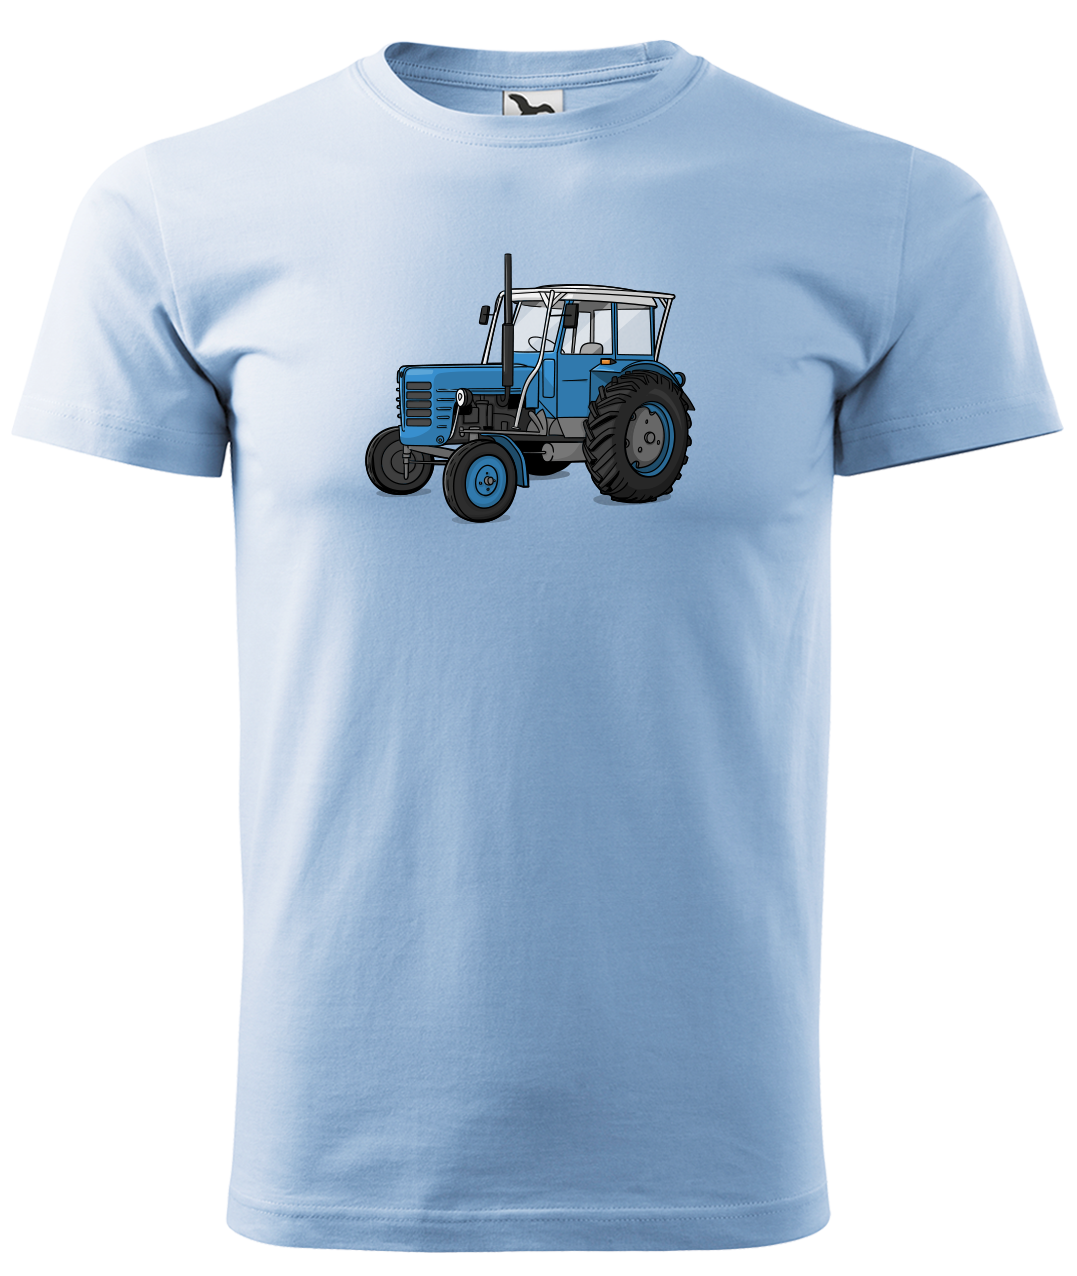 Dětské tričko s traktorem - Starý traktor Velikost: 4 roky / 110 cm, Barva: Nebesky modrá (15)